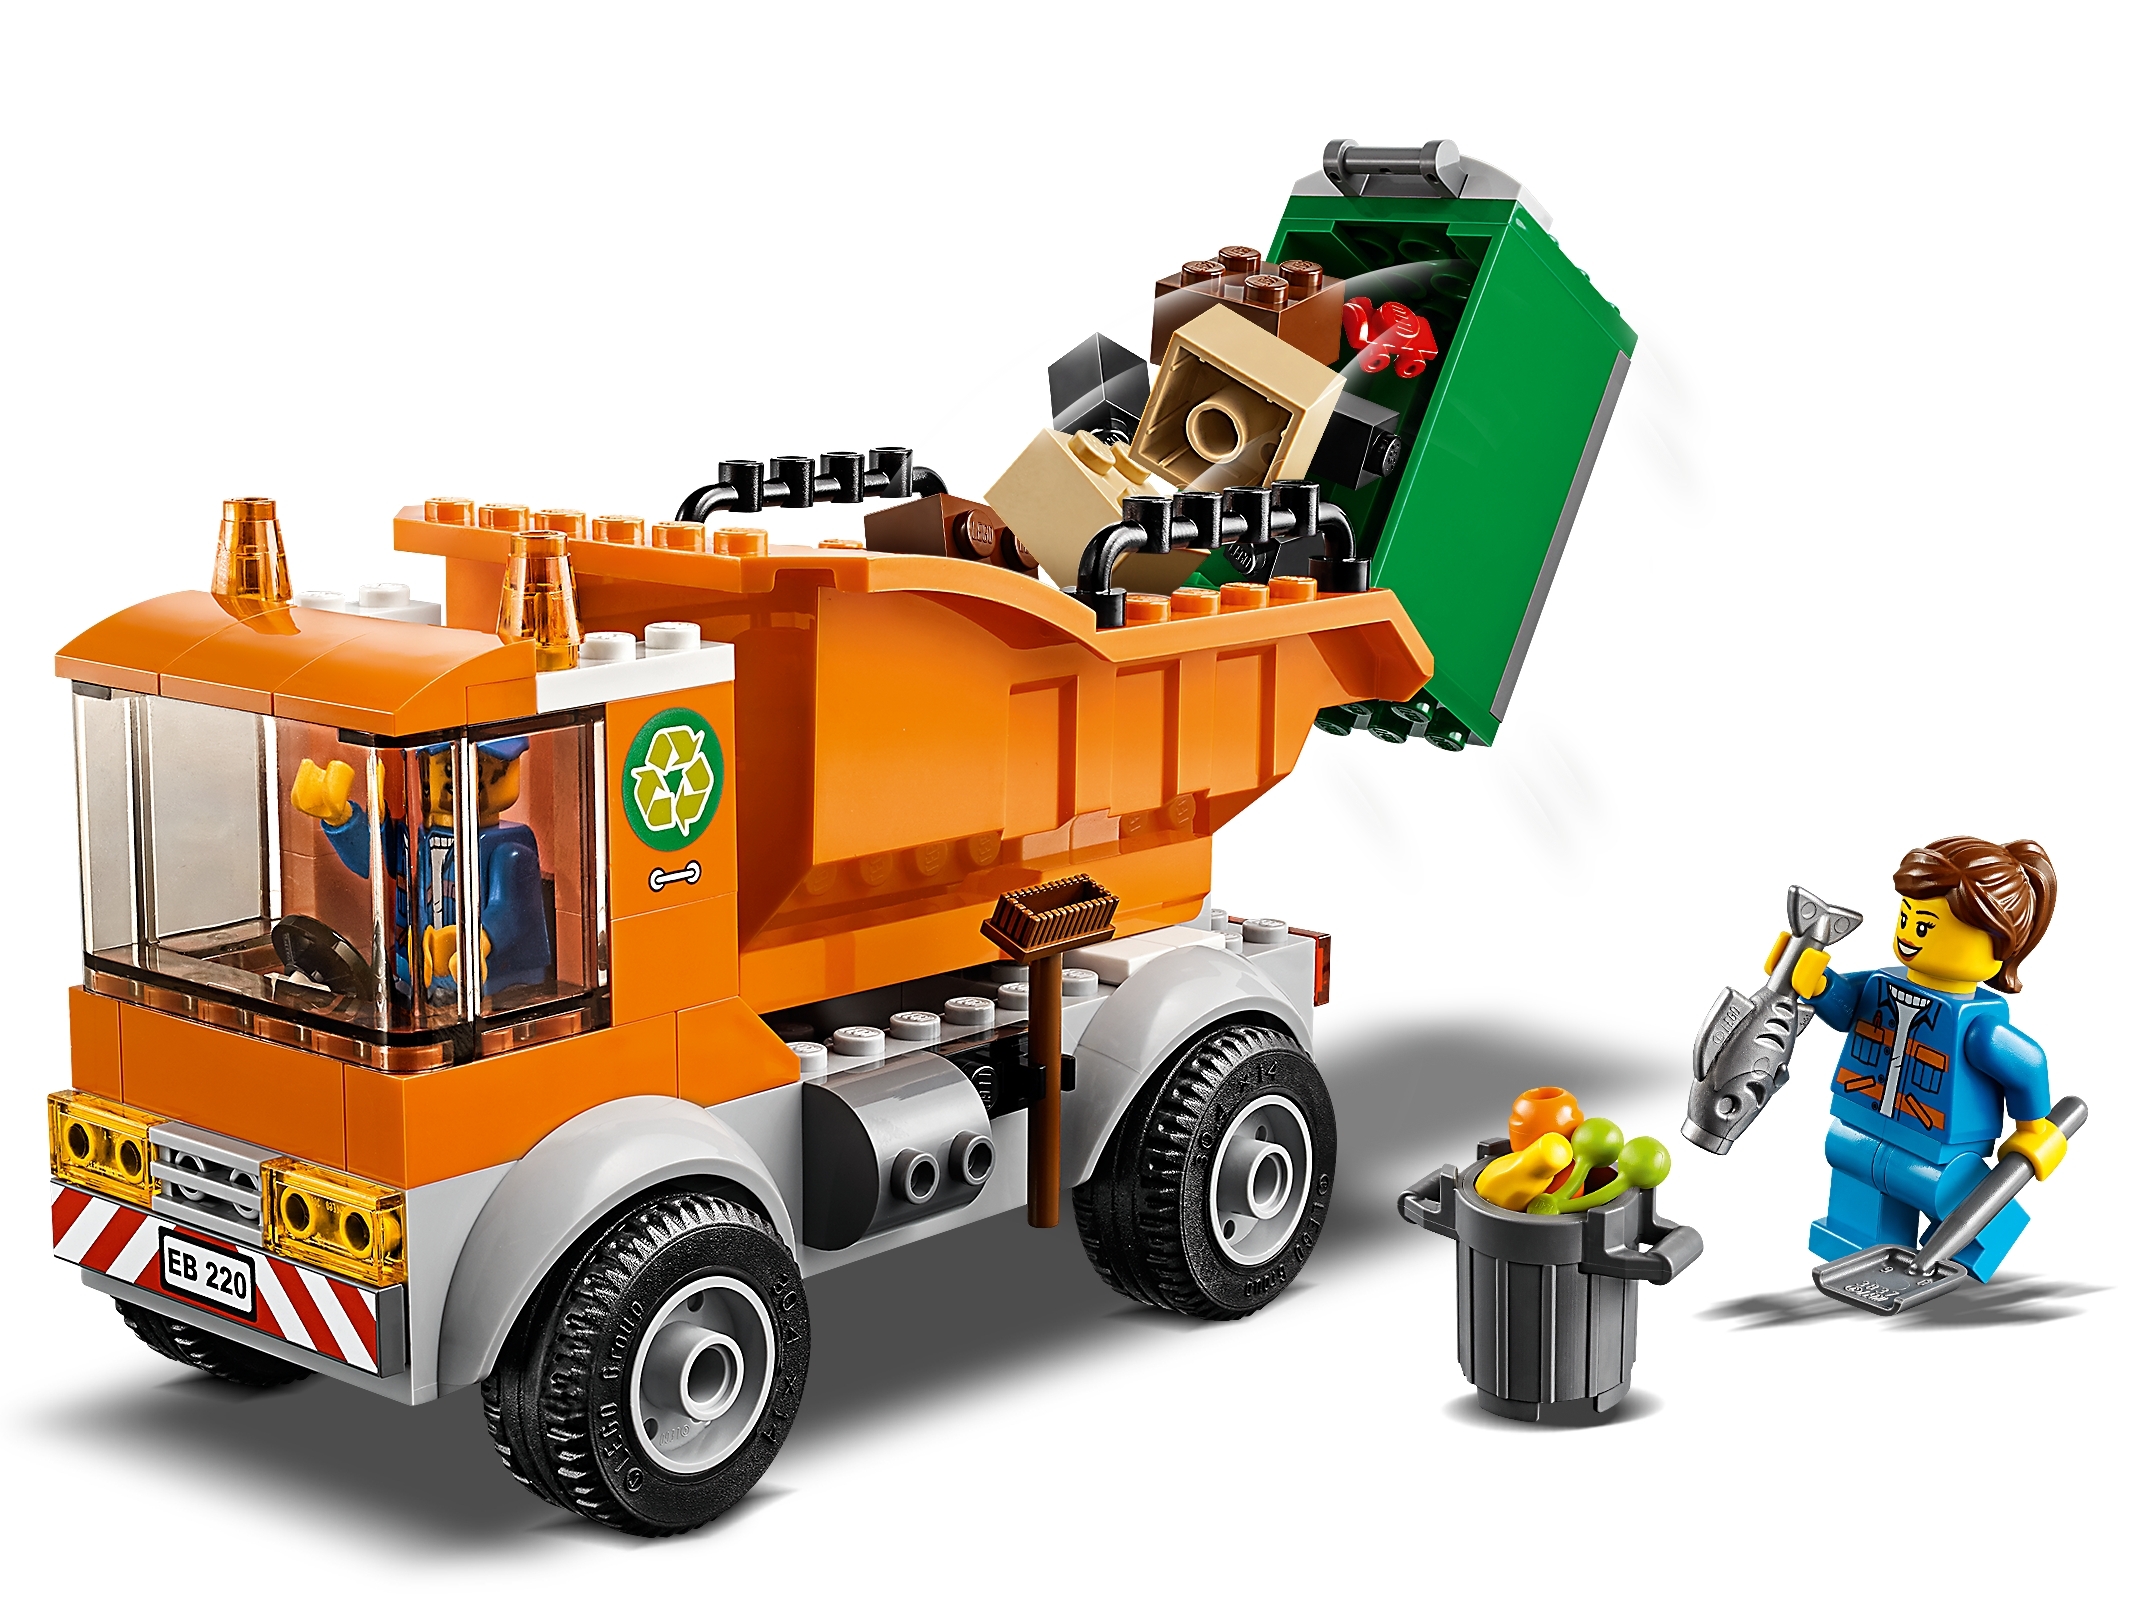 Grønne bønner opfindelse Regelmæssigt Garbage Truck 60220 | City | Buy online at the Official LEGO® Shop US